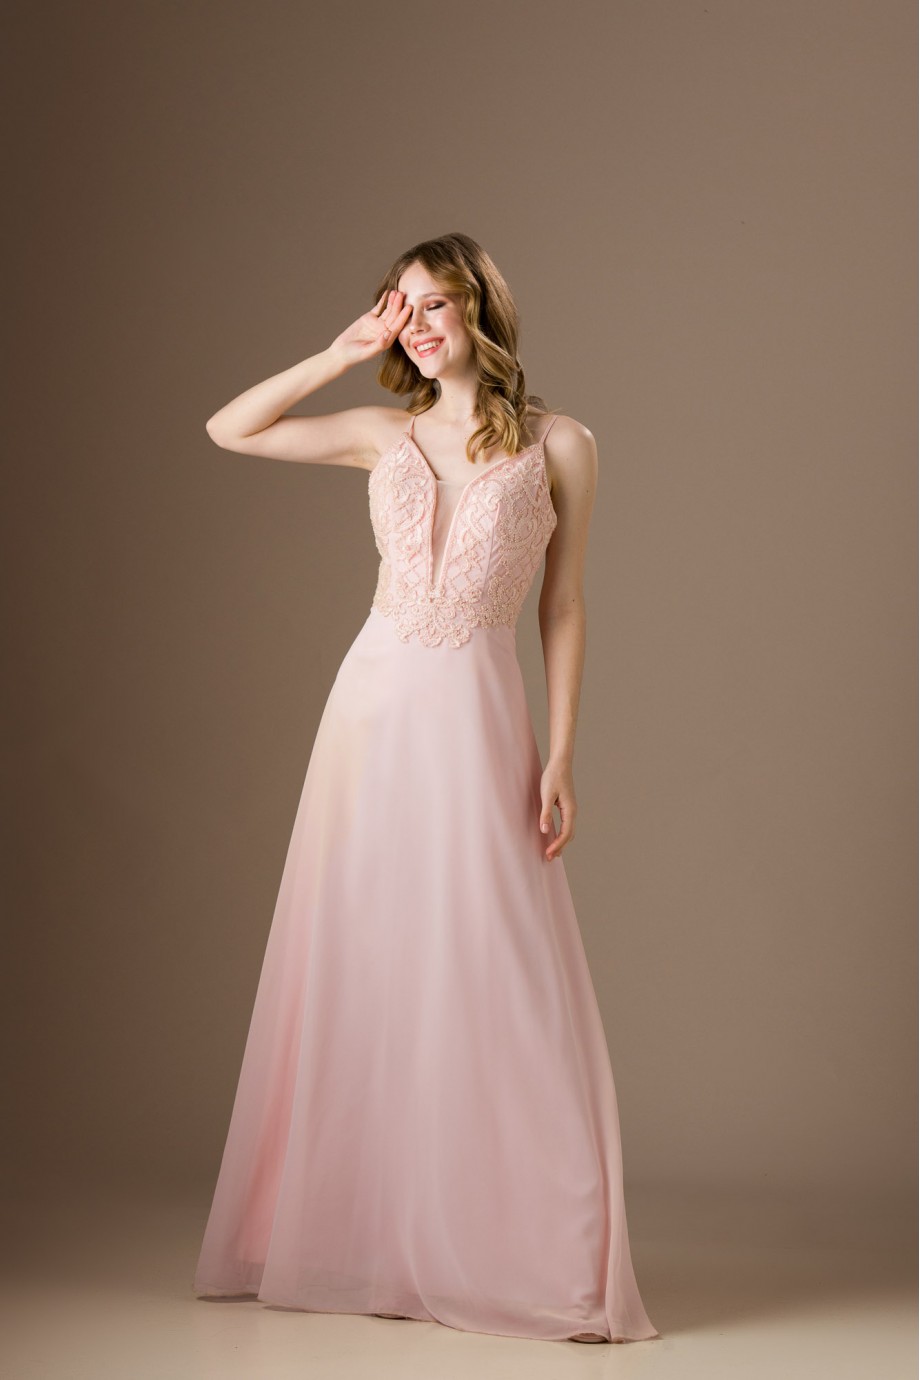 Μακρύ ροζ φόρεμα με ντεκολτέ και κέντημα